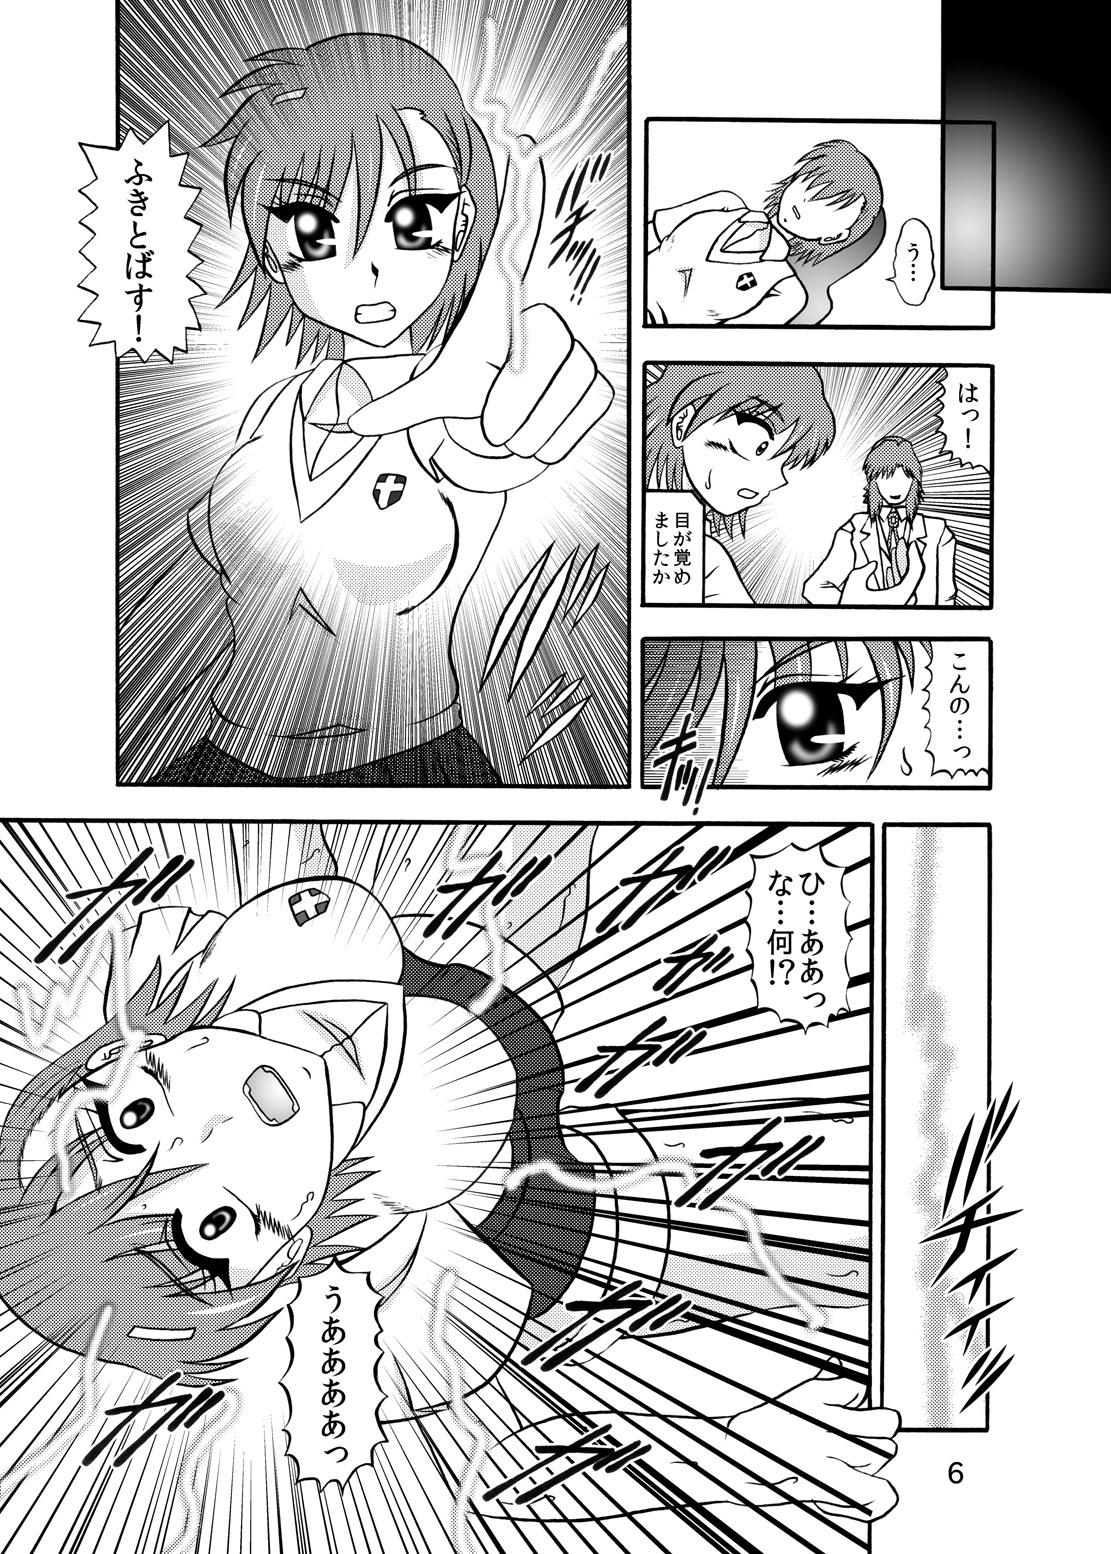 Yanks Featured Inyoku Kaizou: Misaka Mikoto - Toaru kagaku no railgun Work - Page 4